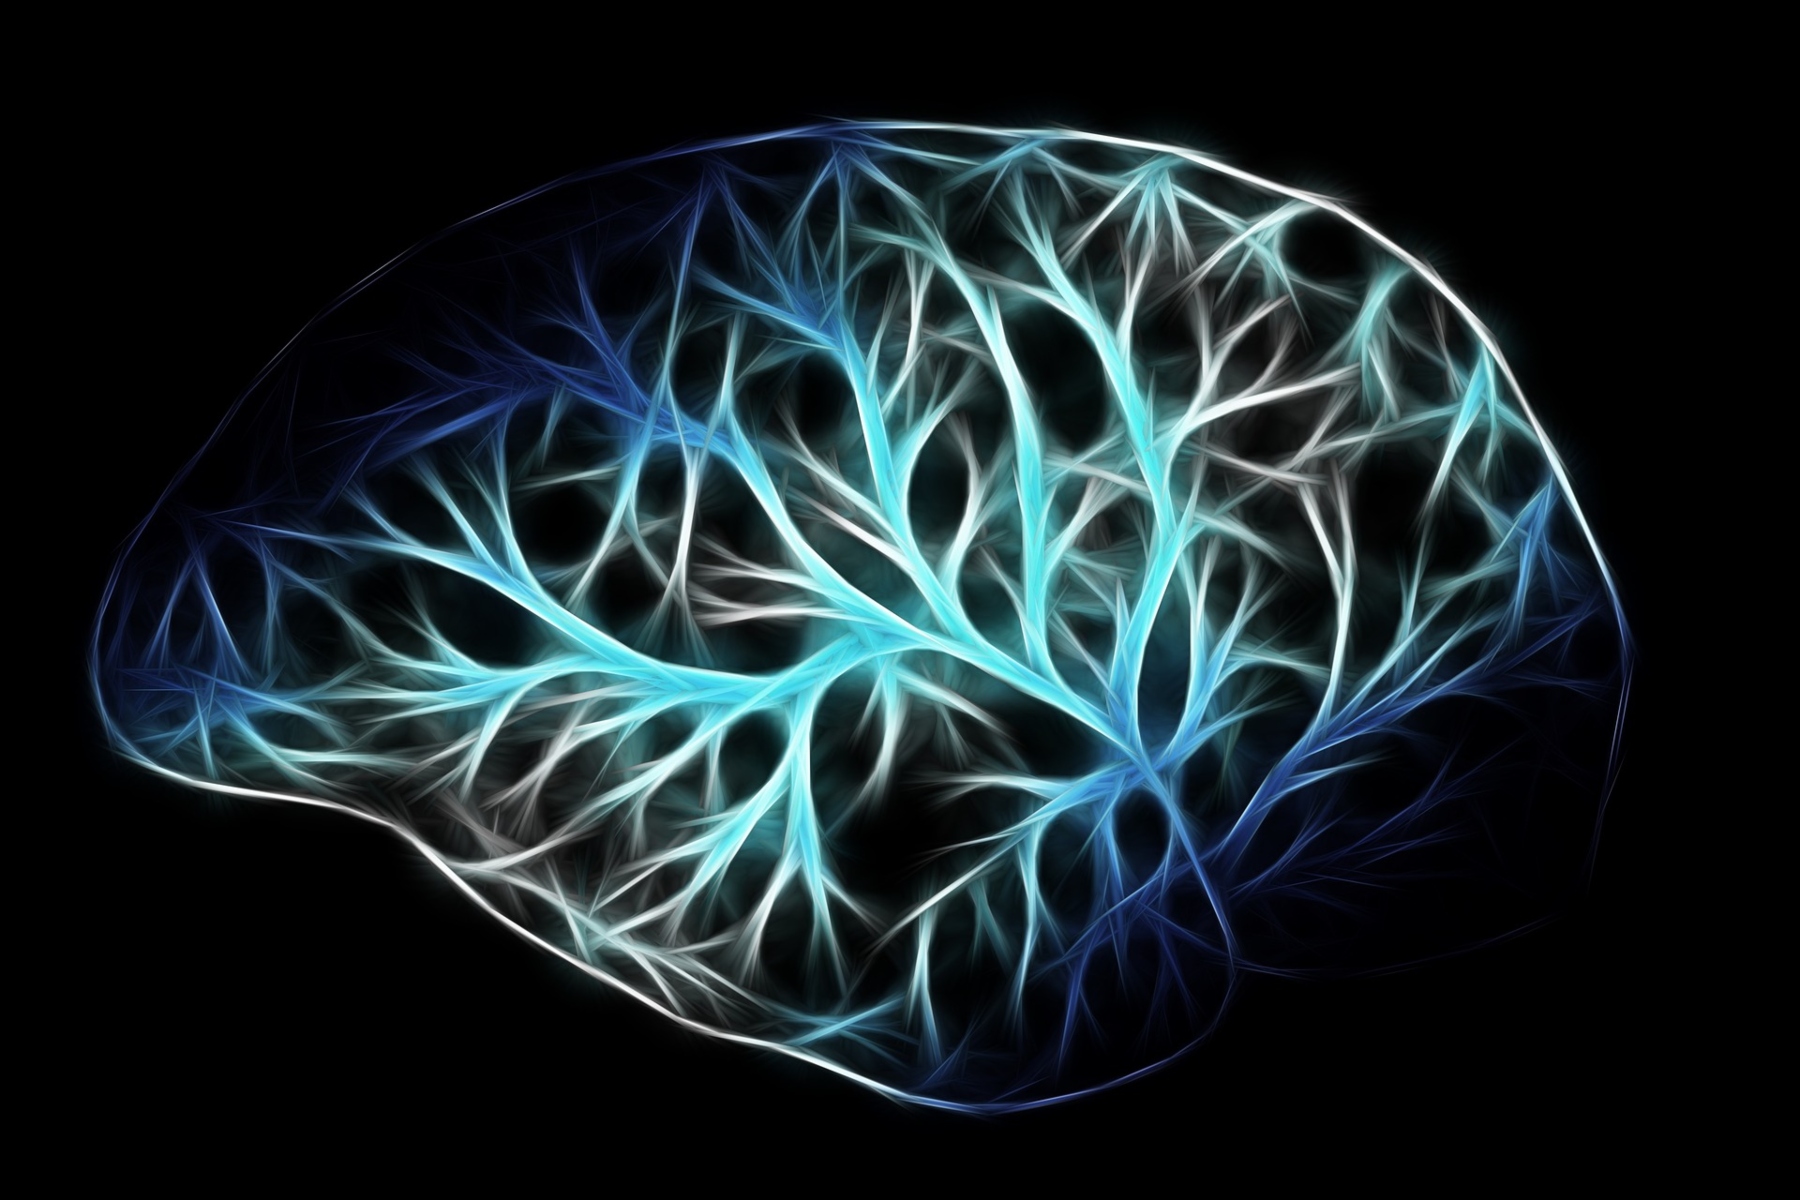 Κυτταρική αναγέννηση: Νευρική οδός προάγει την αναγέννηση μετά από τραυματικές κακώσεις